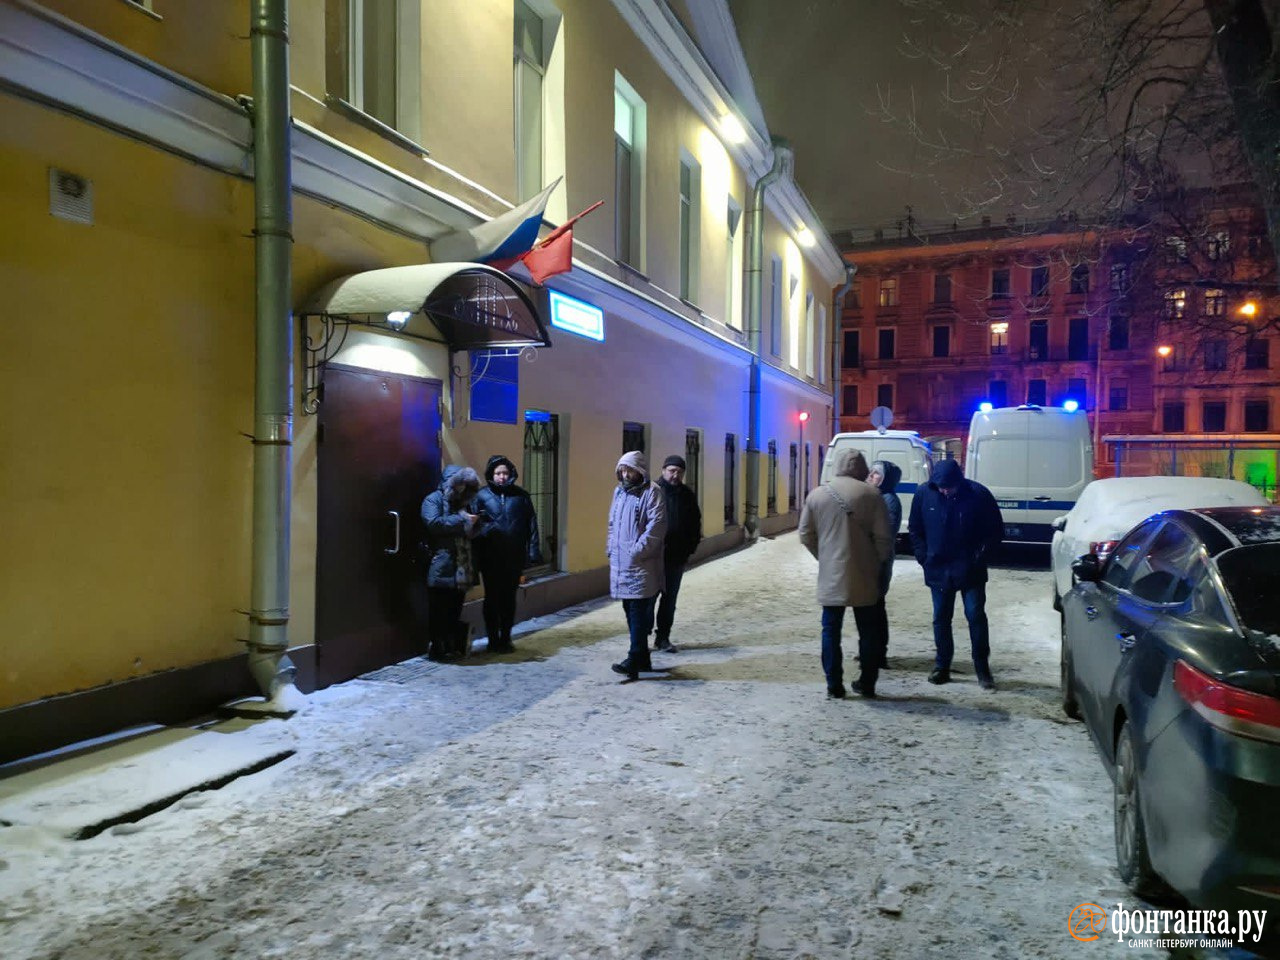 «К ним матерей не пускают, они там плачут». Петербургские родители ждут на морозе задержанных в «Галерее» подростков